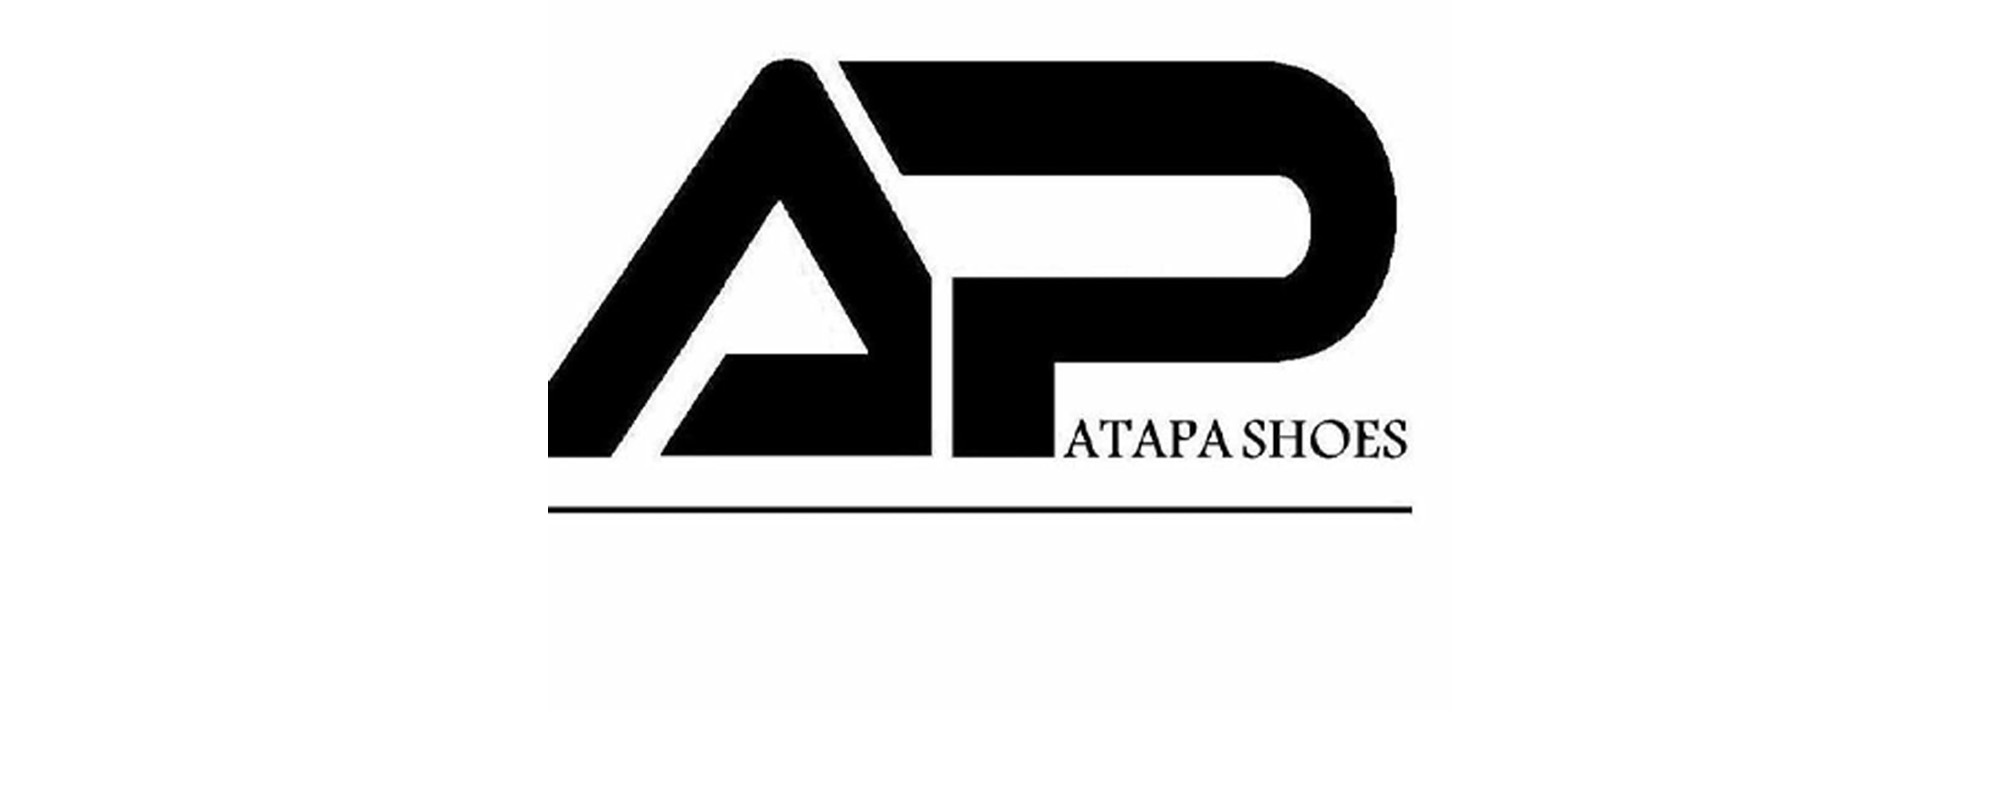 کفش آتاپا